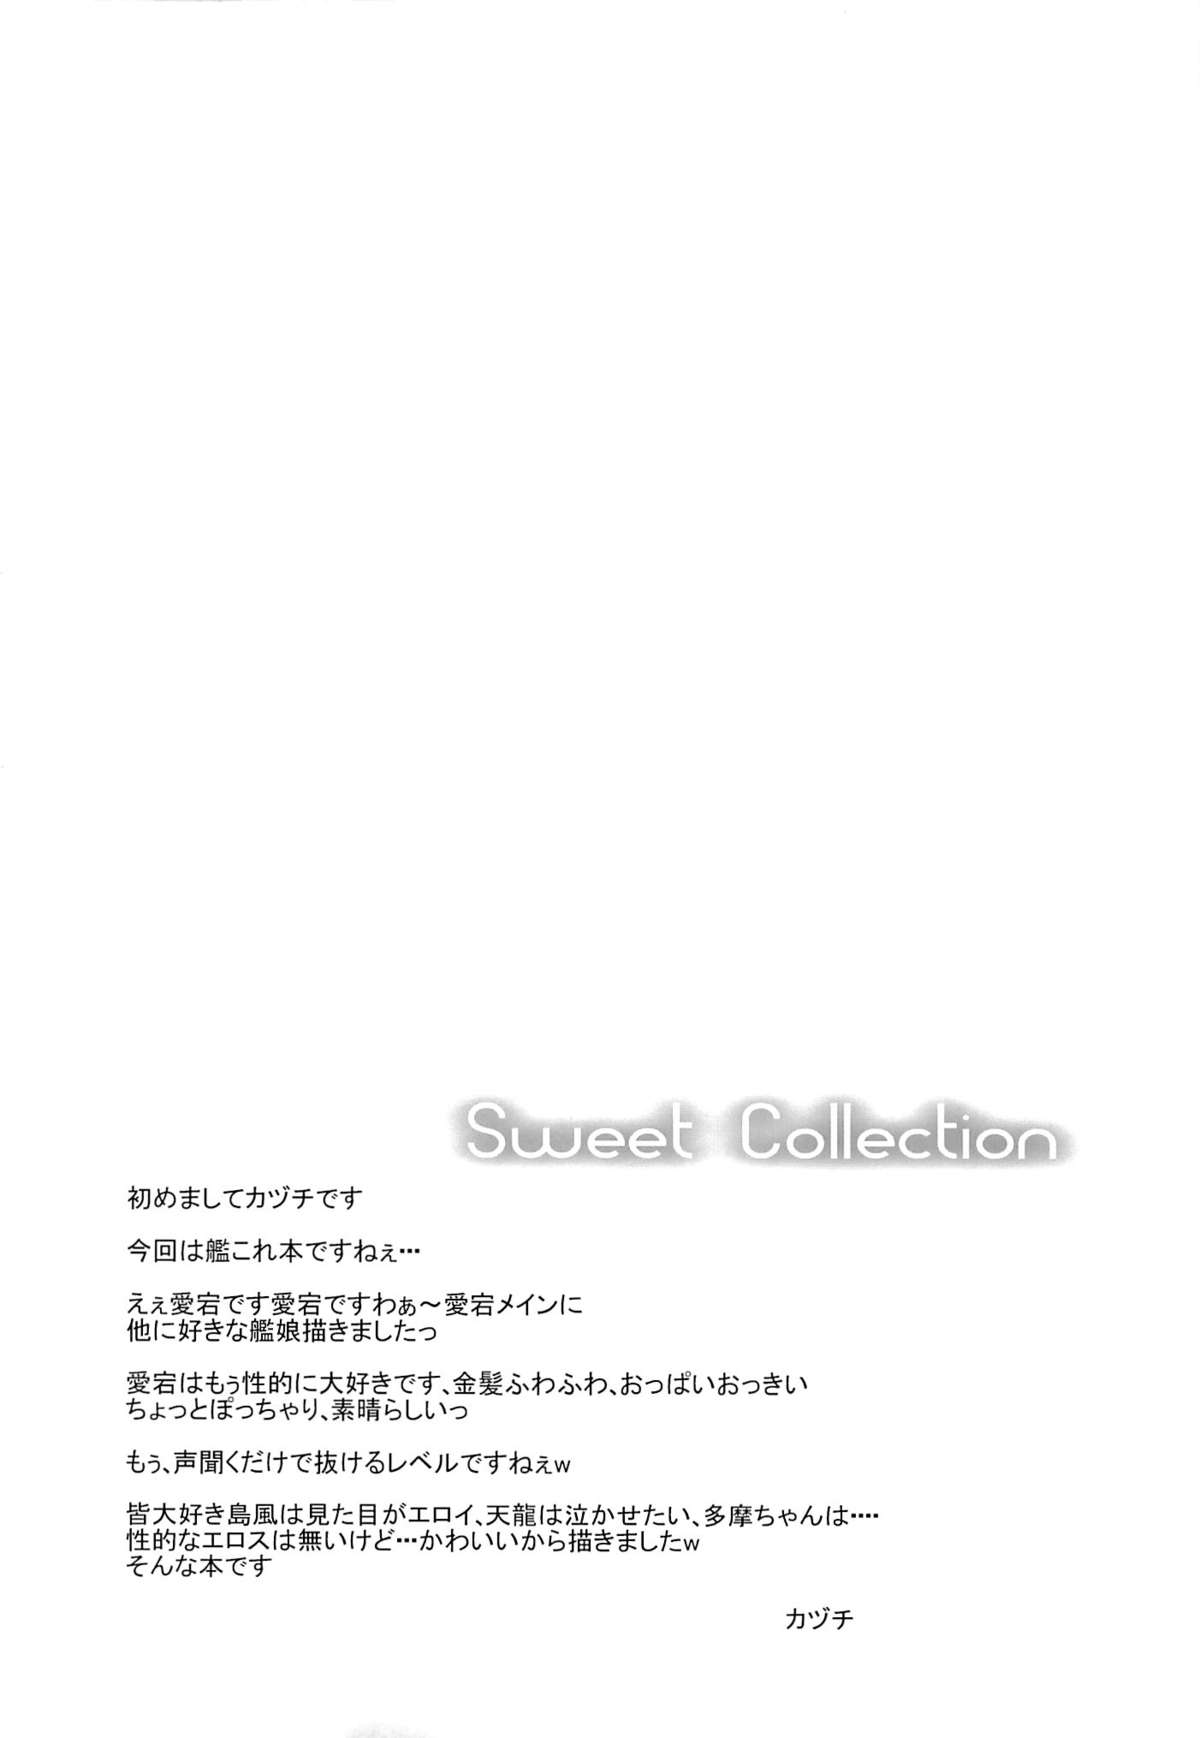 (砲雷撃戦!よーい! 2戦目!) [Sweet Avenue (カヅチ)] Sweet Collection (艦隊これくしょん -艦これ-)